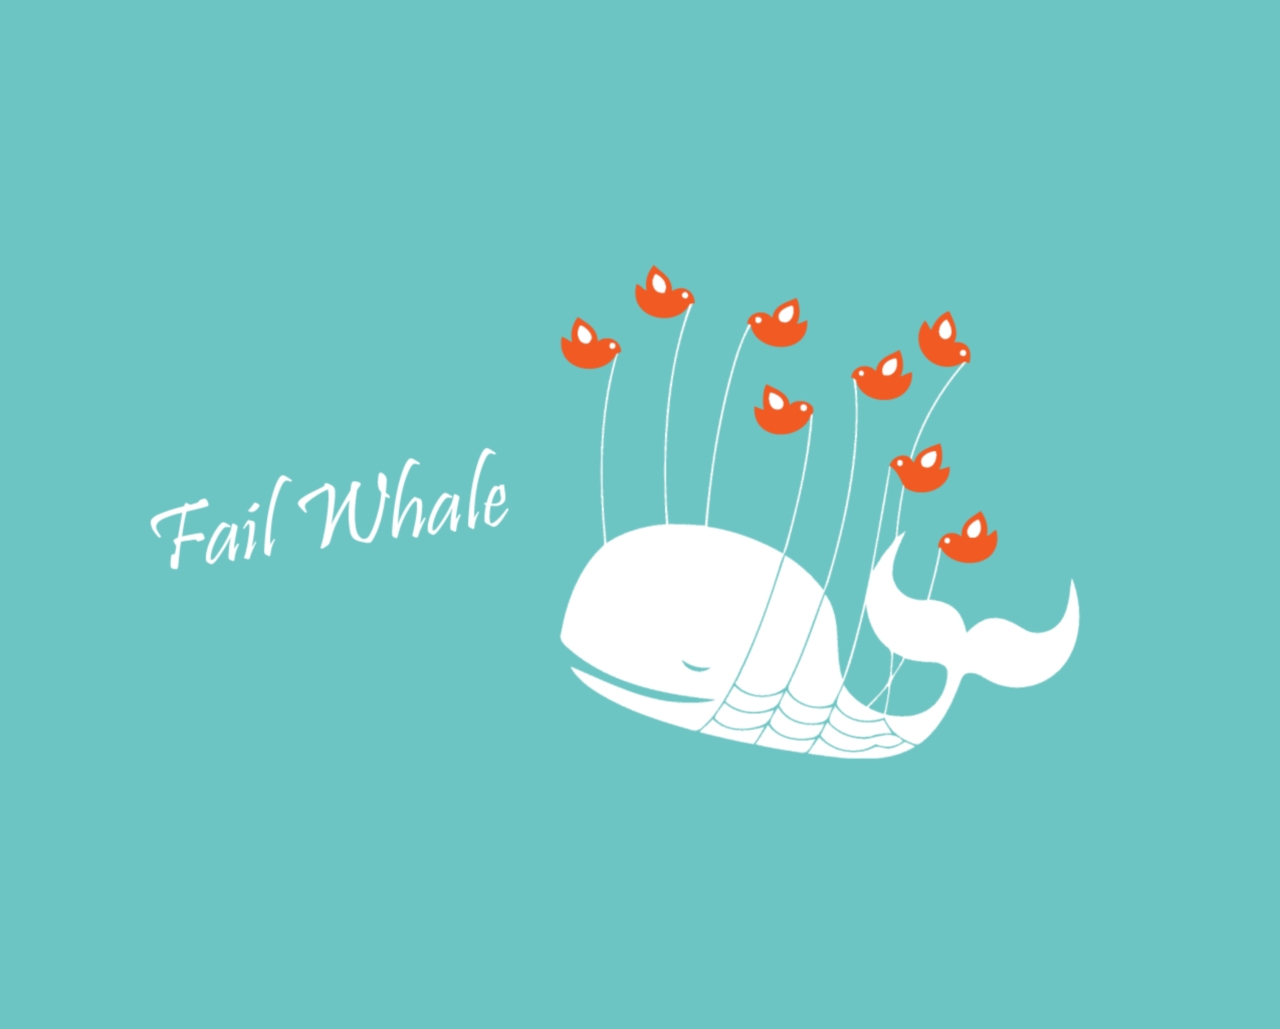 The Fail whale